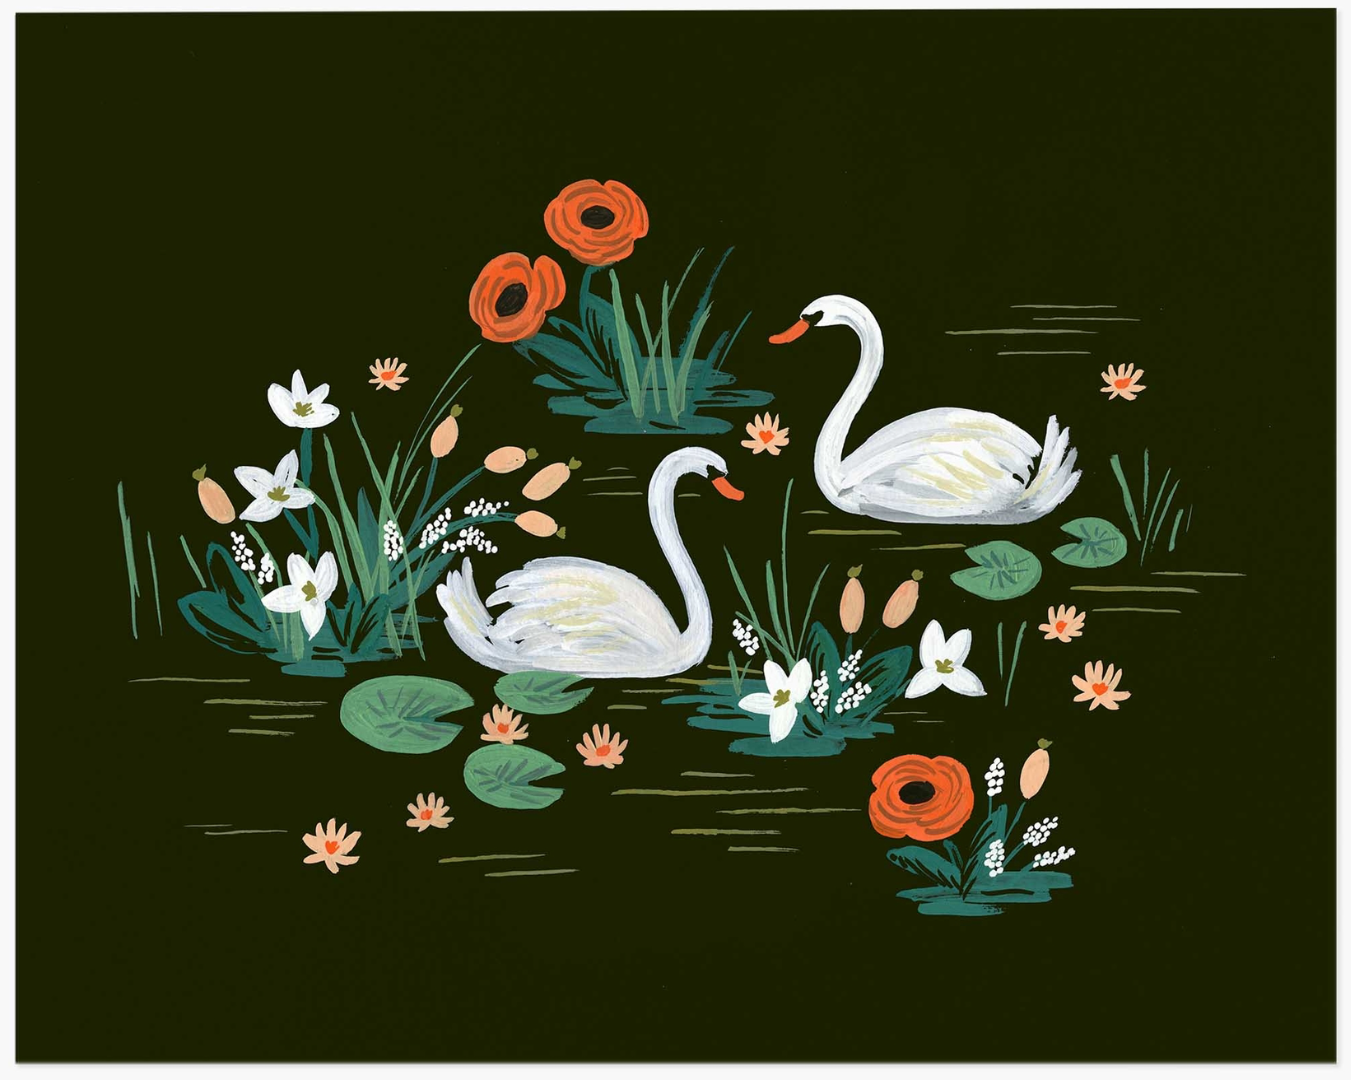 Swan Art Print